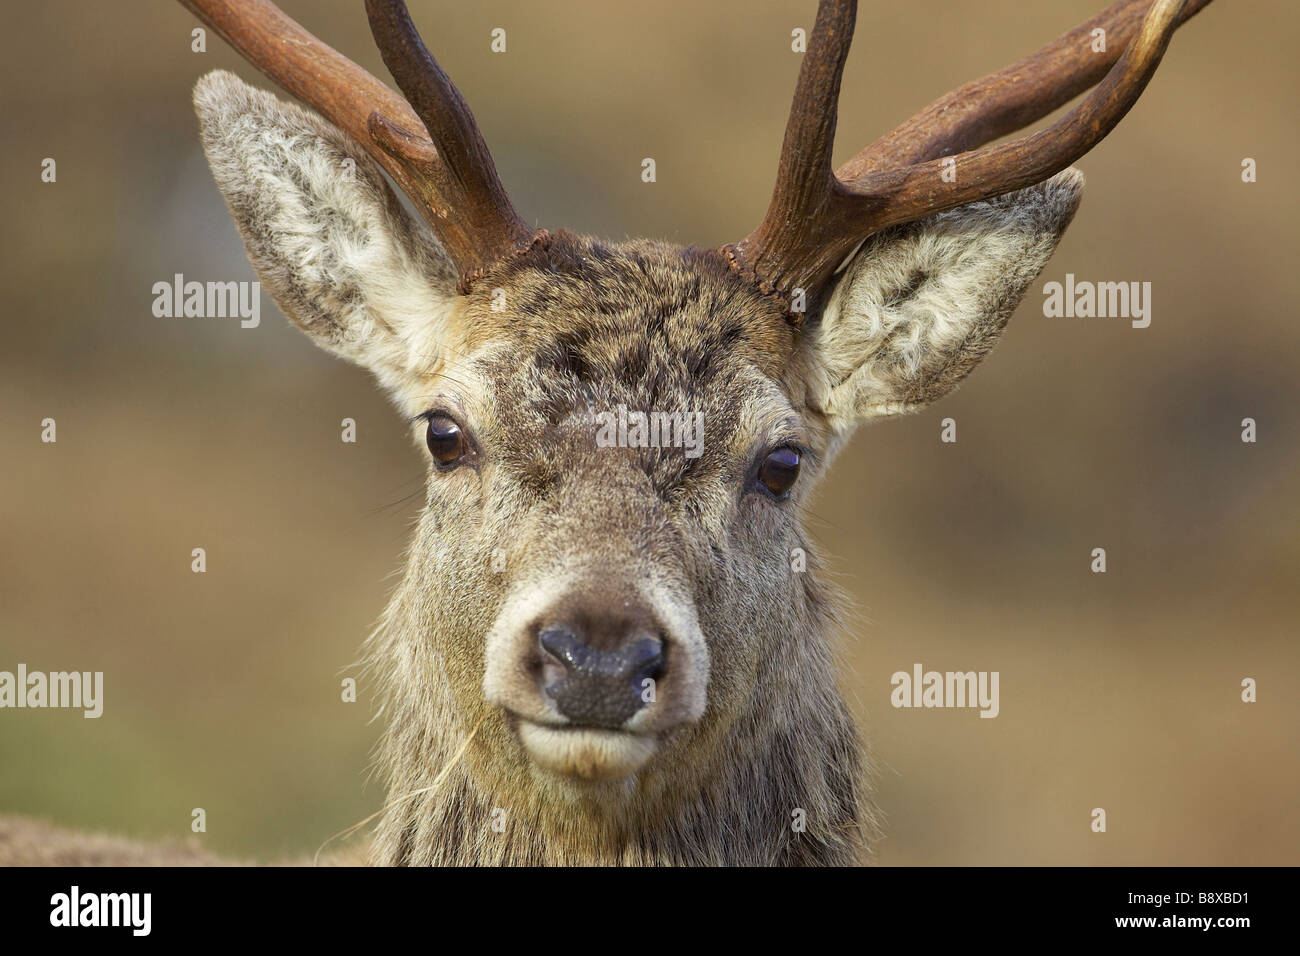 Red Deer (Cervus elaphus), Stag, close-up portrait Banque D'Images